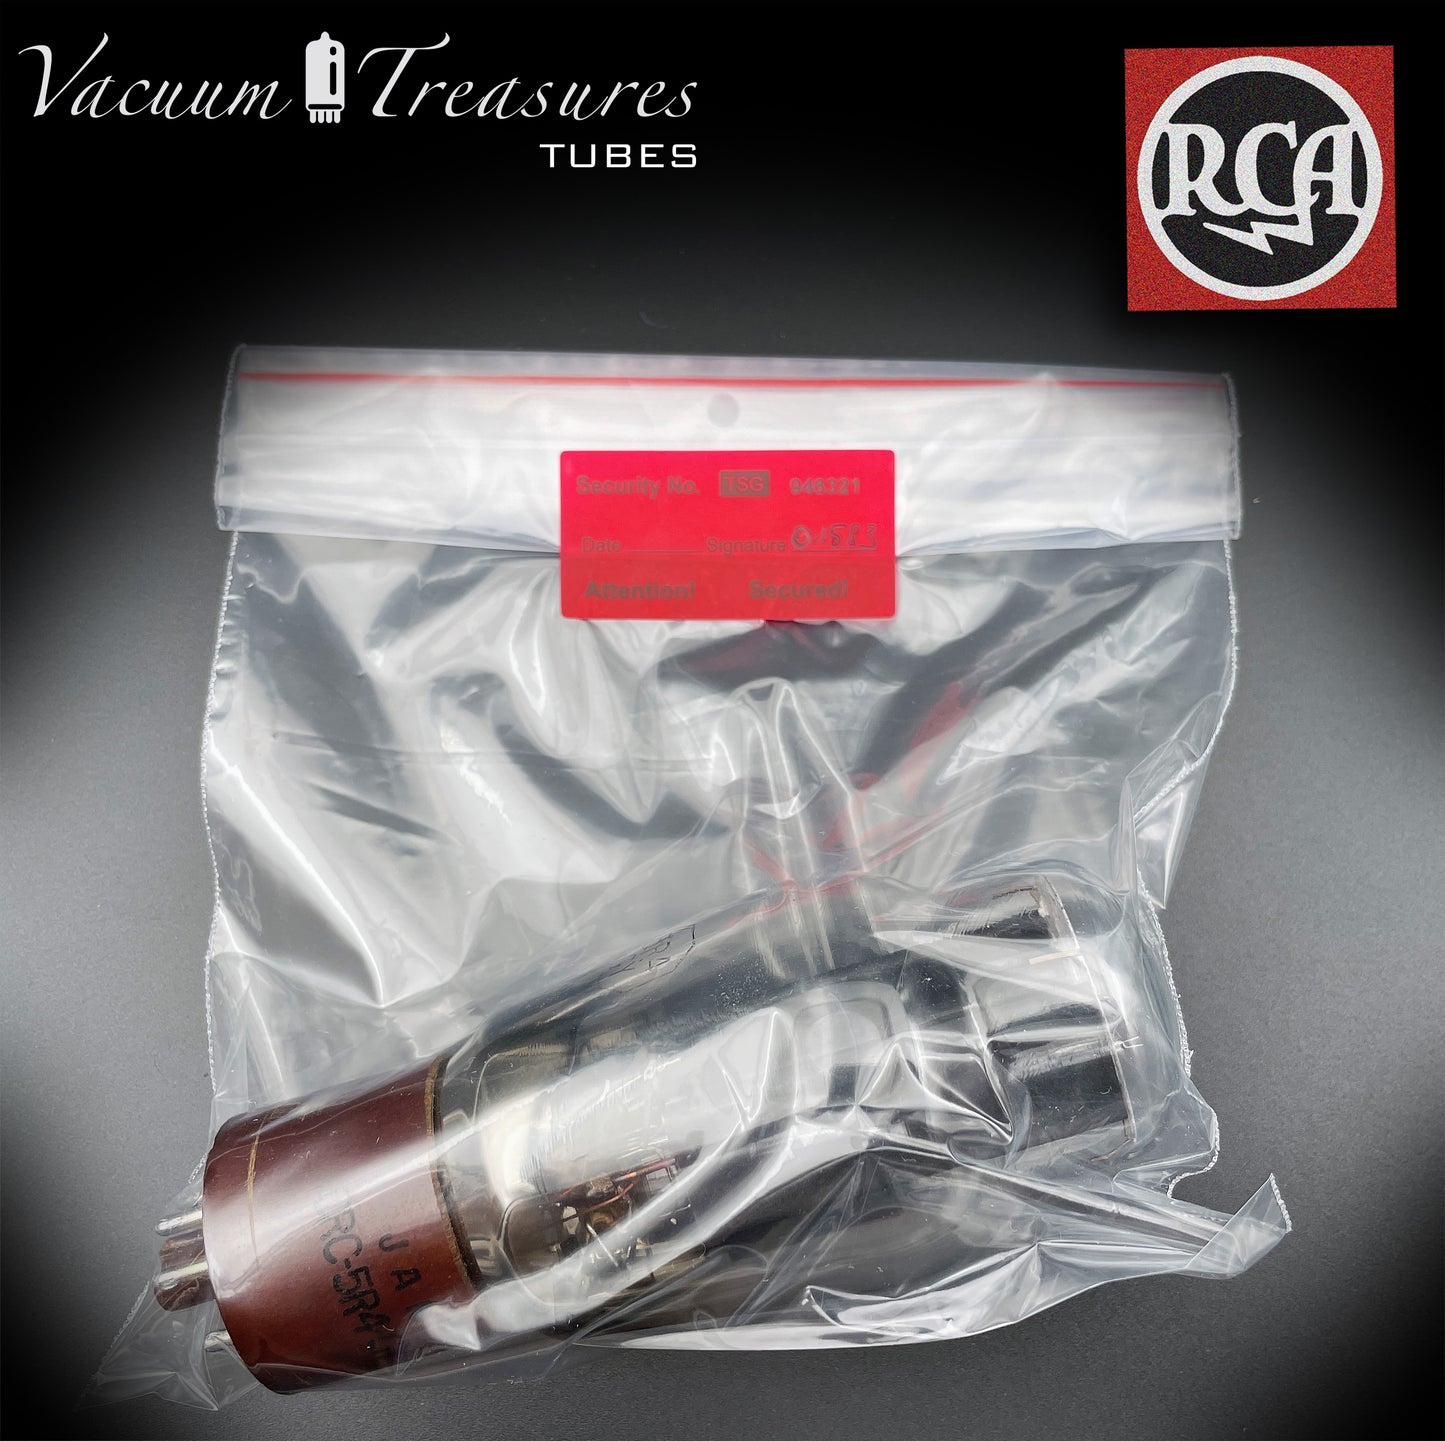 5R4GY JAN ( CV717 ) RCA plaques noires double fond carré Getter tubes assortis redresseurs fabriqués aux États-Unis '45